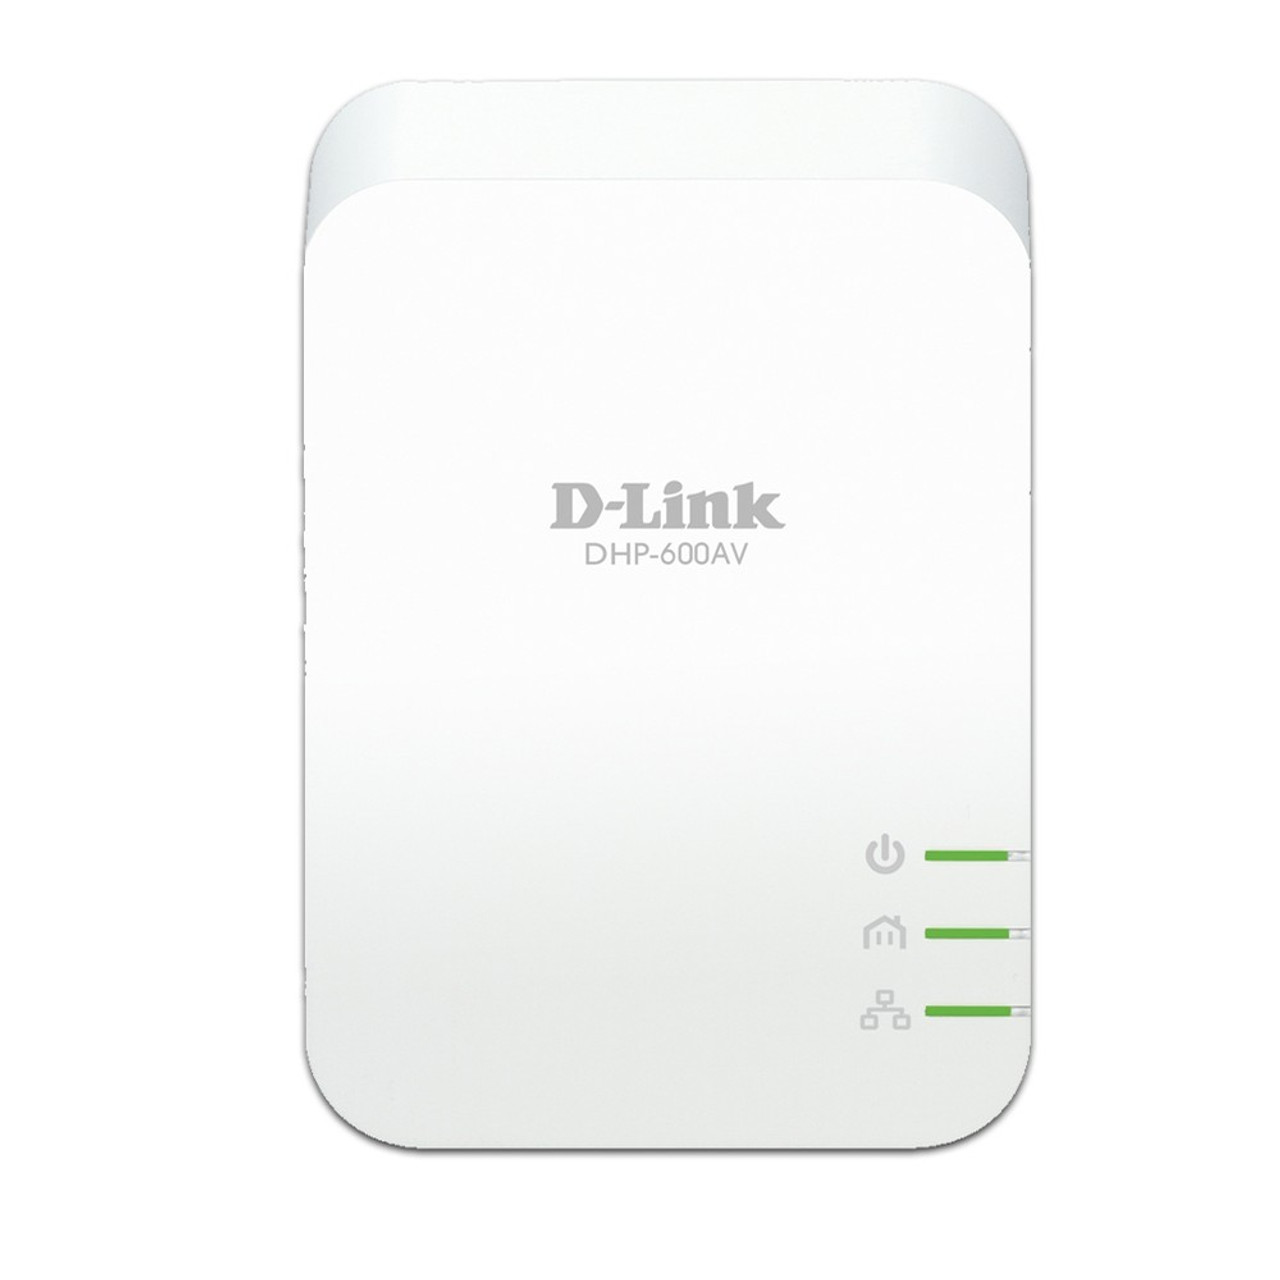 D-Link DHP-600AV Gigabit Adapter